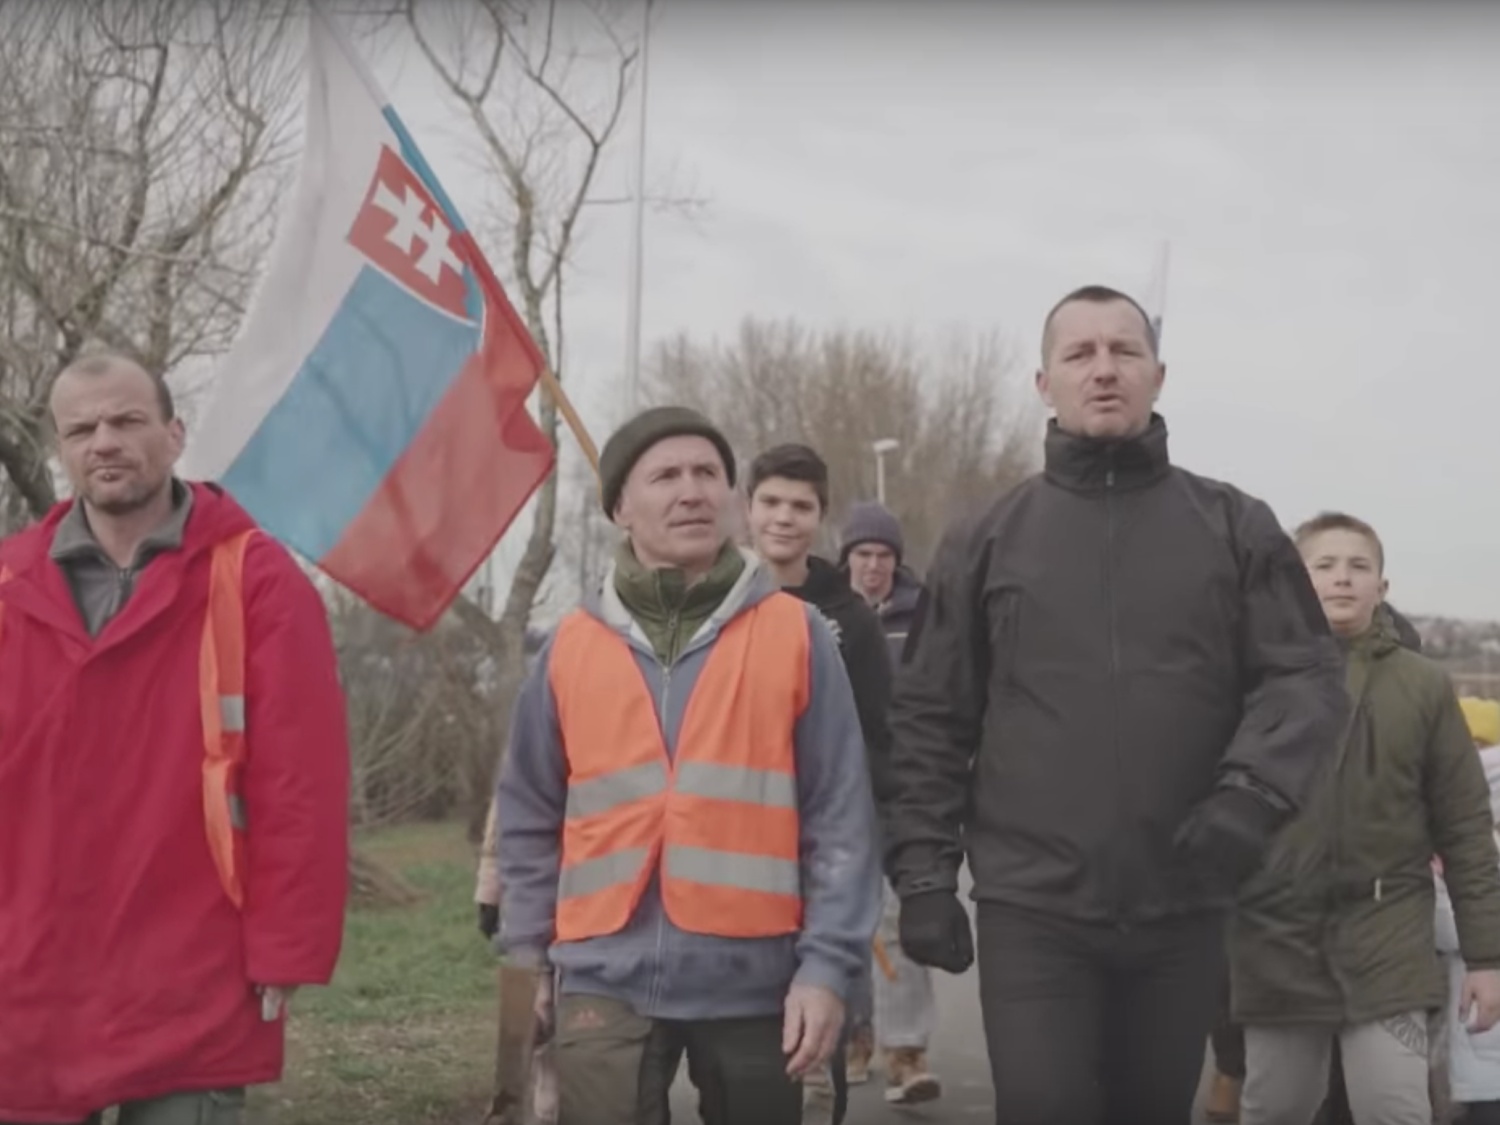 Kard z klipu skrajnie prawicowego piosenkarza Ondreja Ďuricy „Vstávaj” opublikowanego na YouTubie trzy dni przed wyborami, 26 lutego 2020 r.